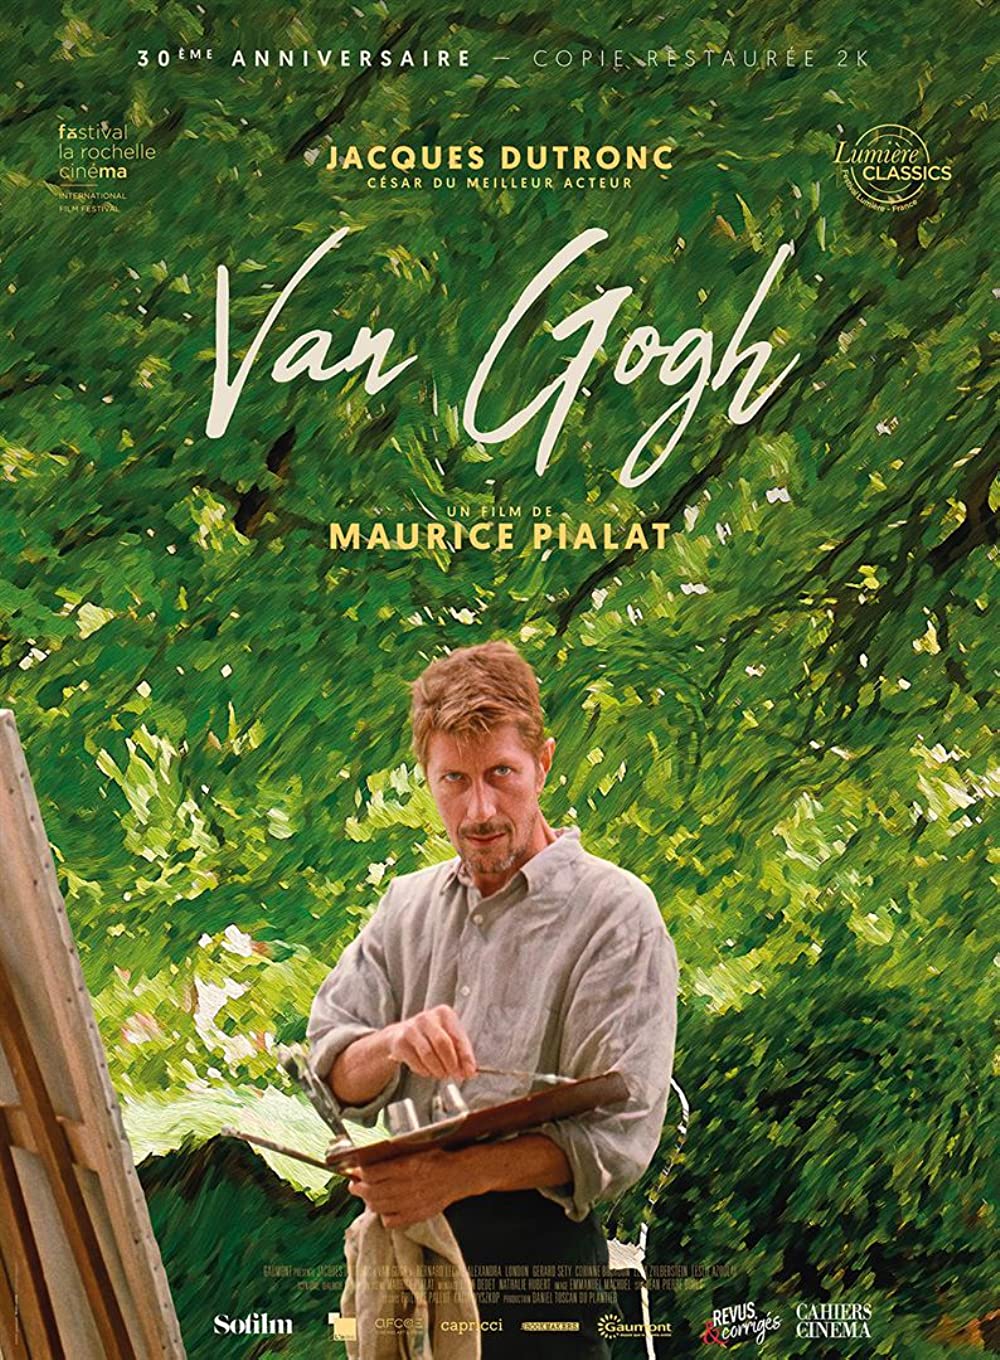 Filmbeschreibung zu Van Gogh (OV)